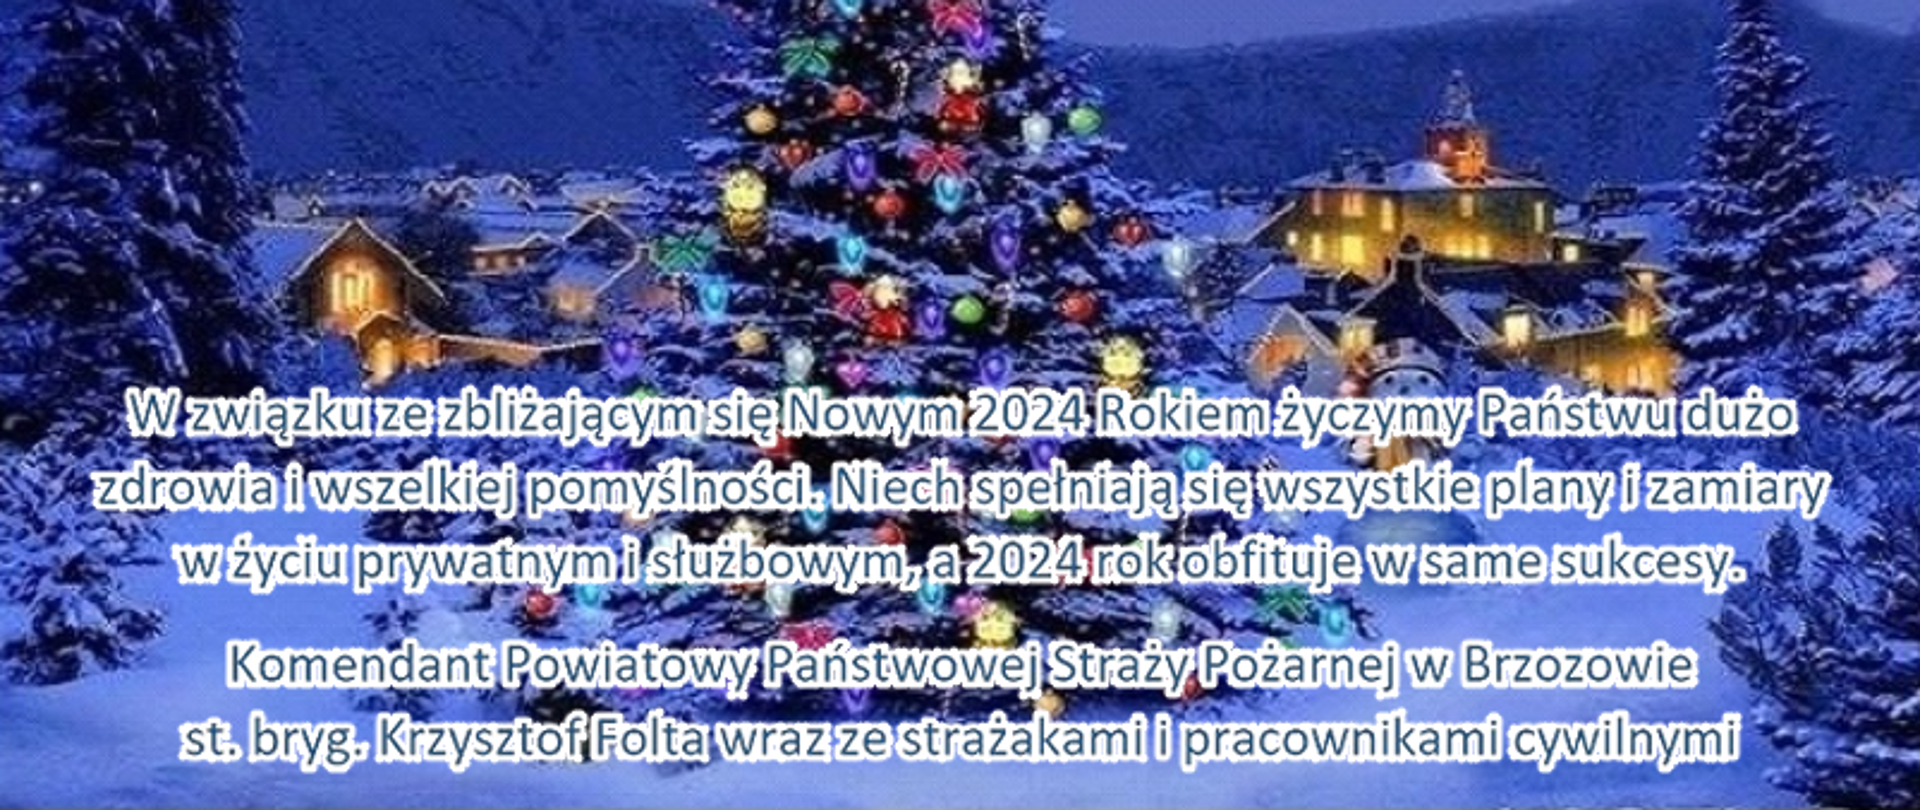 Fotografia przedstawiająca kartkę noworoczną na której znajduje się choinka oraz w drugim planie rozświetlone domy. Na dole kartki znajdują się życzenia noworoczne Komendanta Powiatowego PSP w Brzozowie